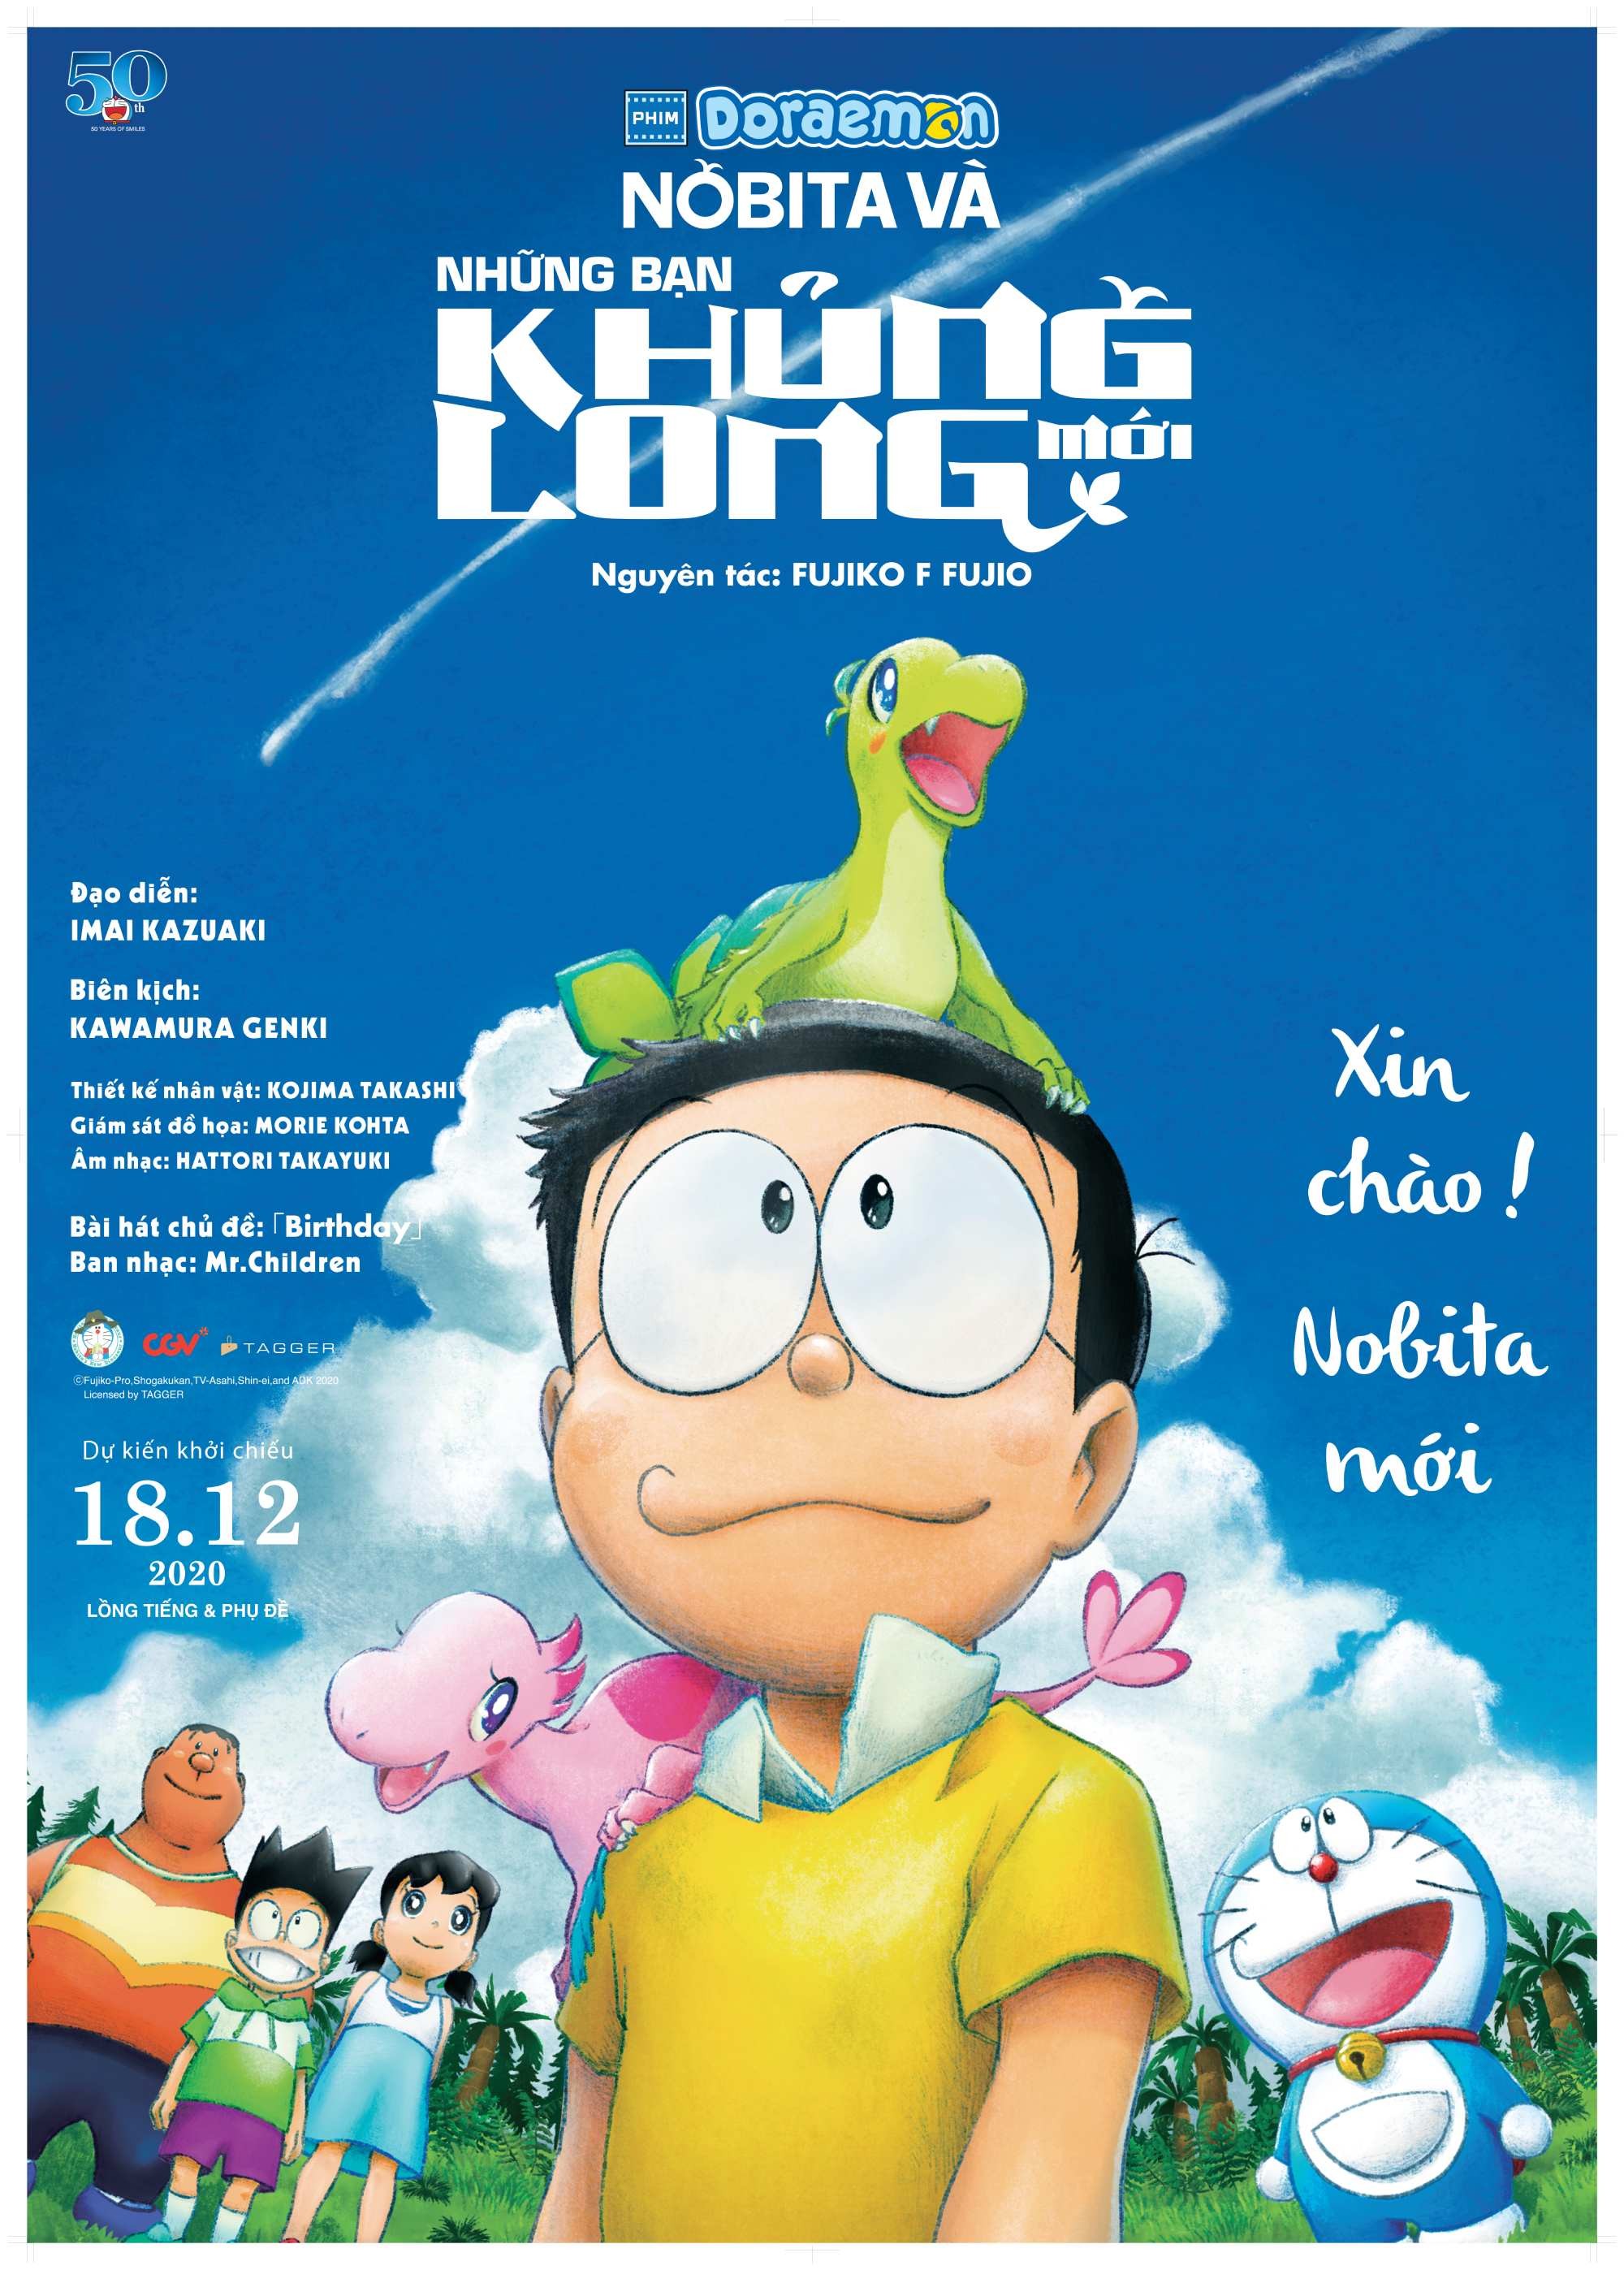 Tác Động Văn Hóa và Giáo Dục từ Các Phim Doraemon